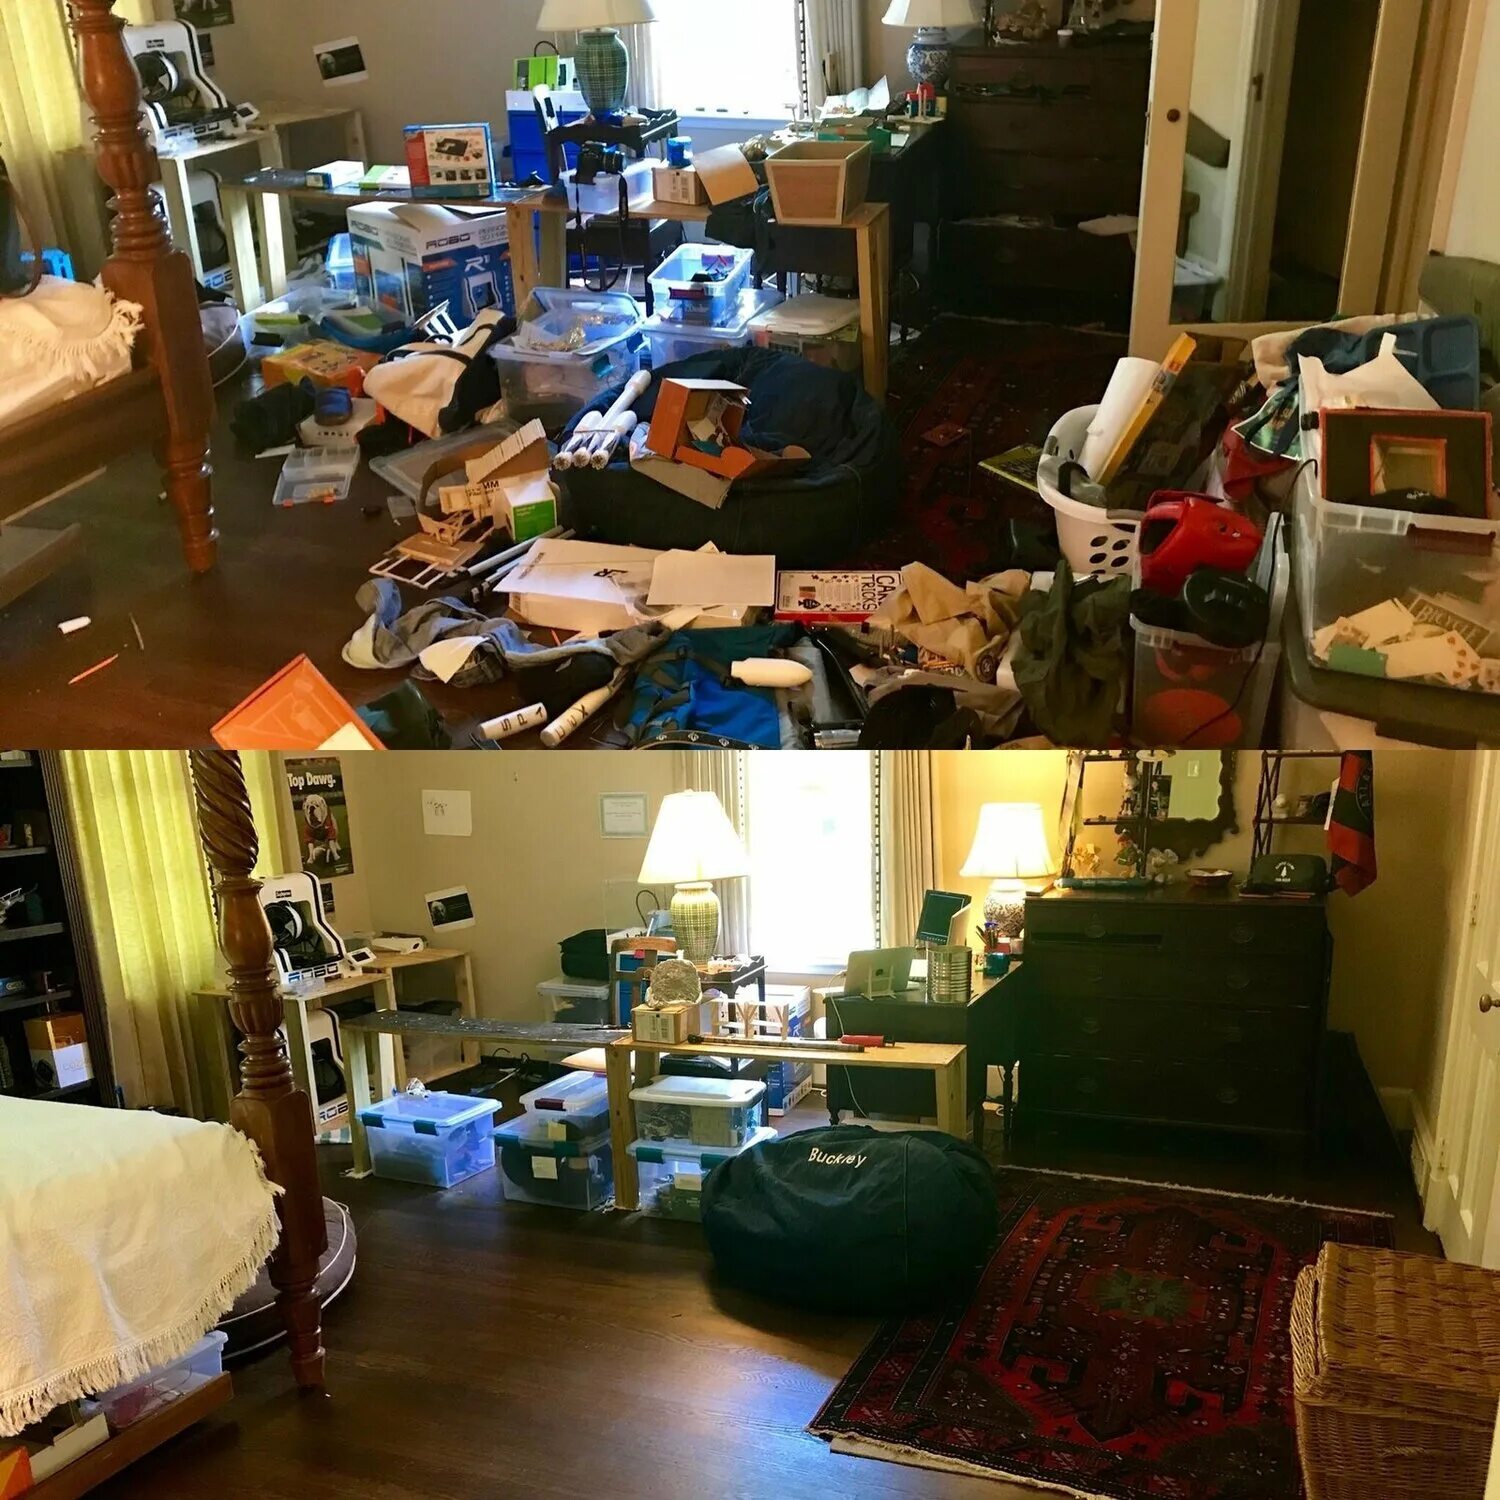 Запусти уборку квартиры. Комната бардак и порядок. Захламленная квартира до и после уборки. Комната до и после уборки. Квартира после уборки.